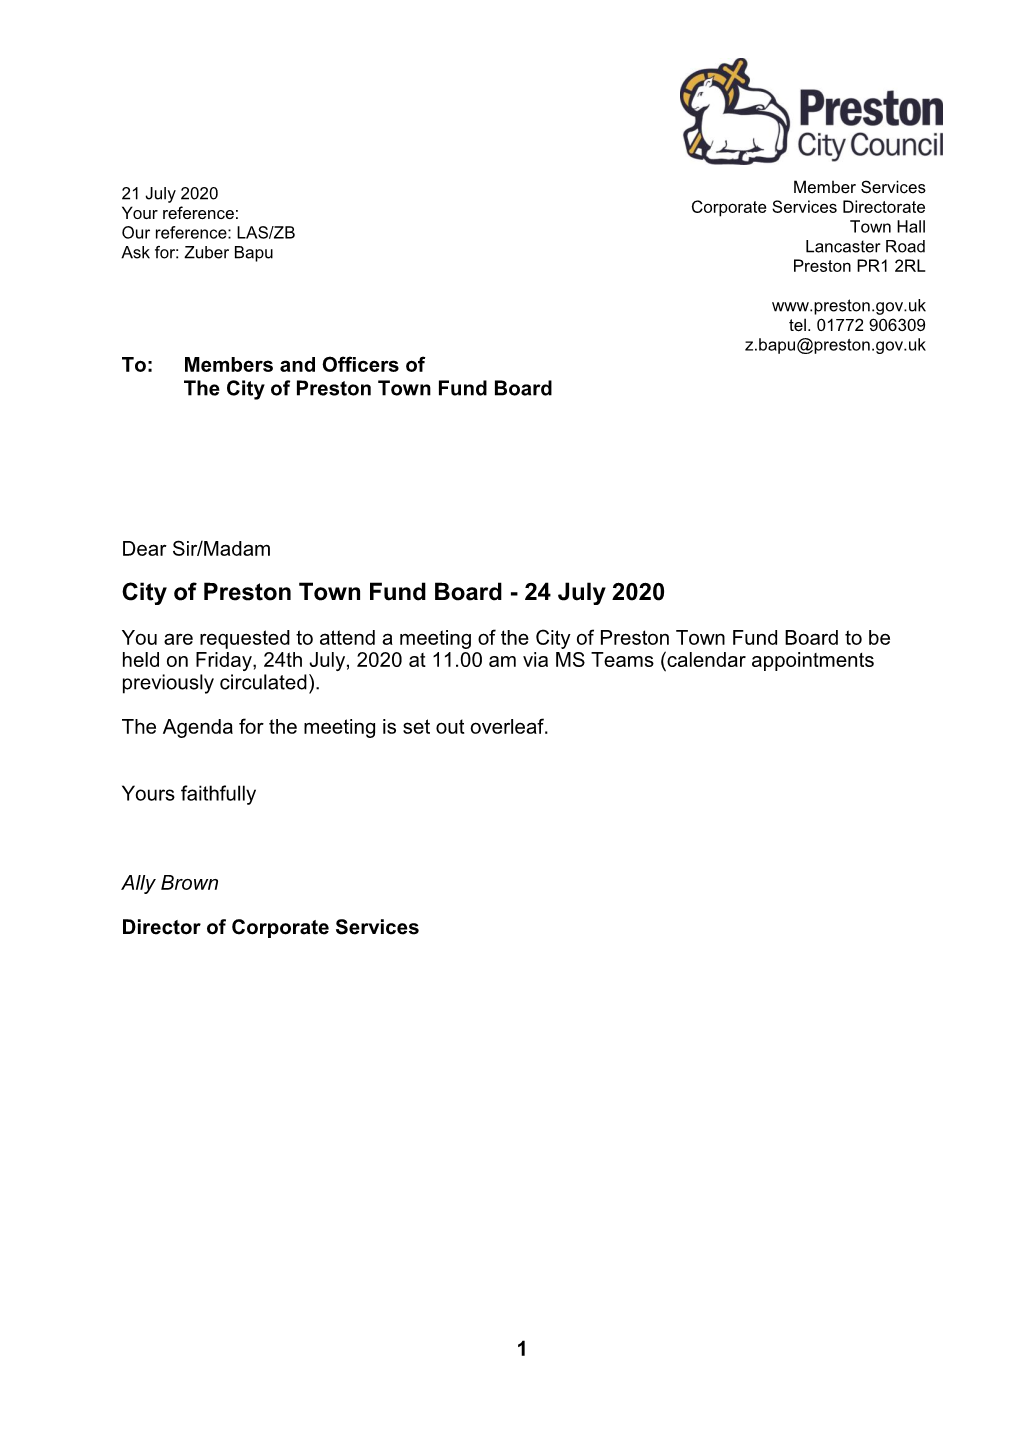 Agenda Document for City of Preston Town Fund Board, 24/07/2020 11:00